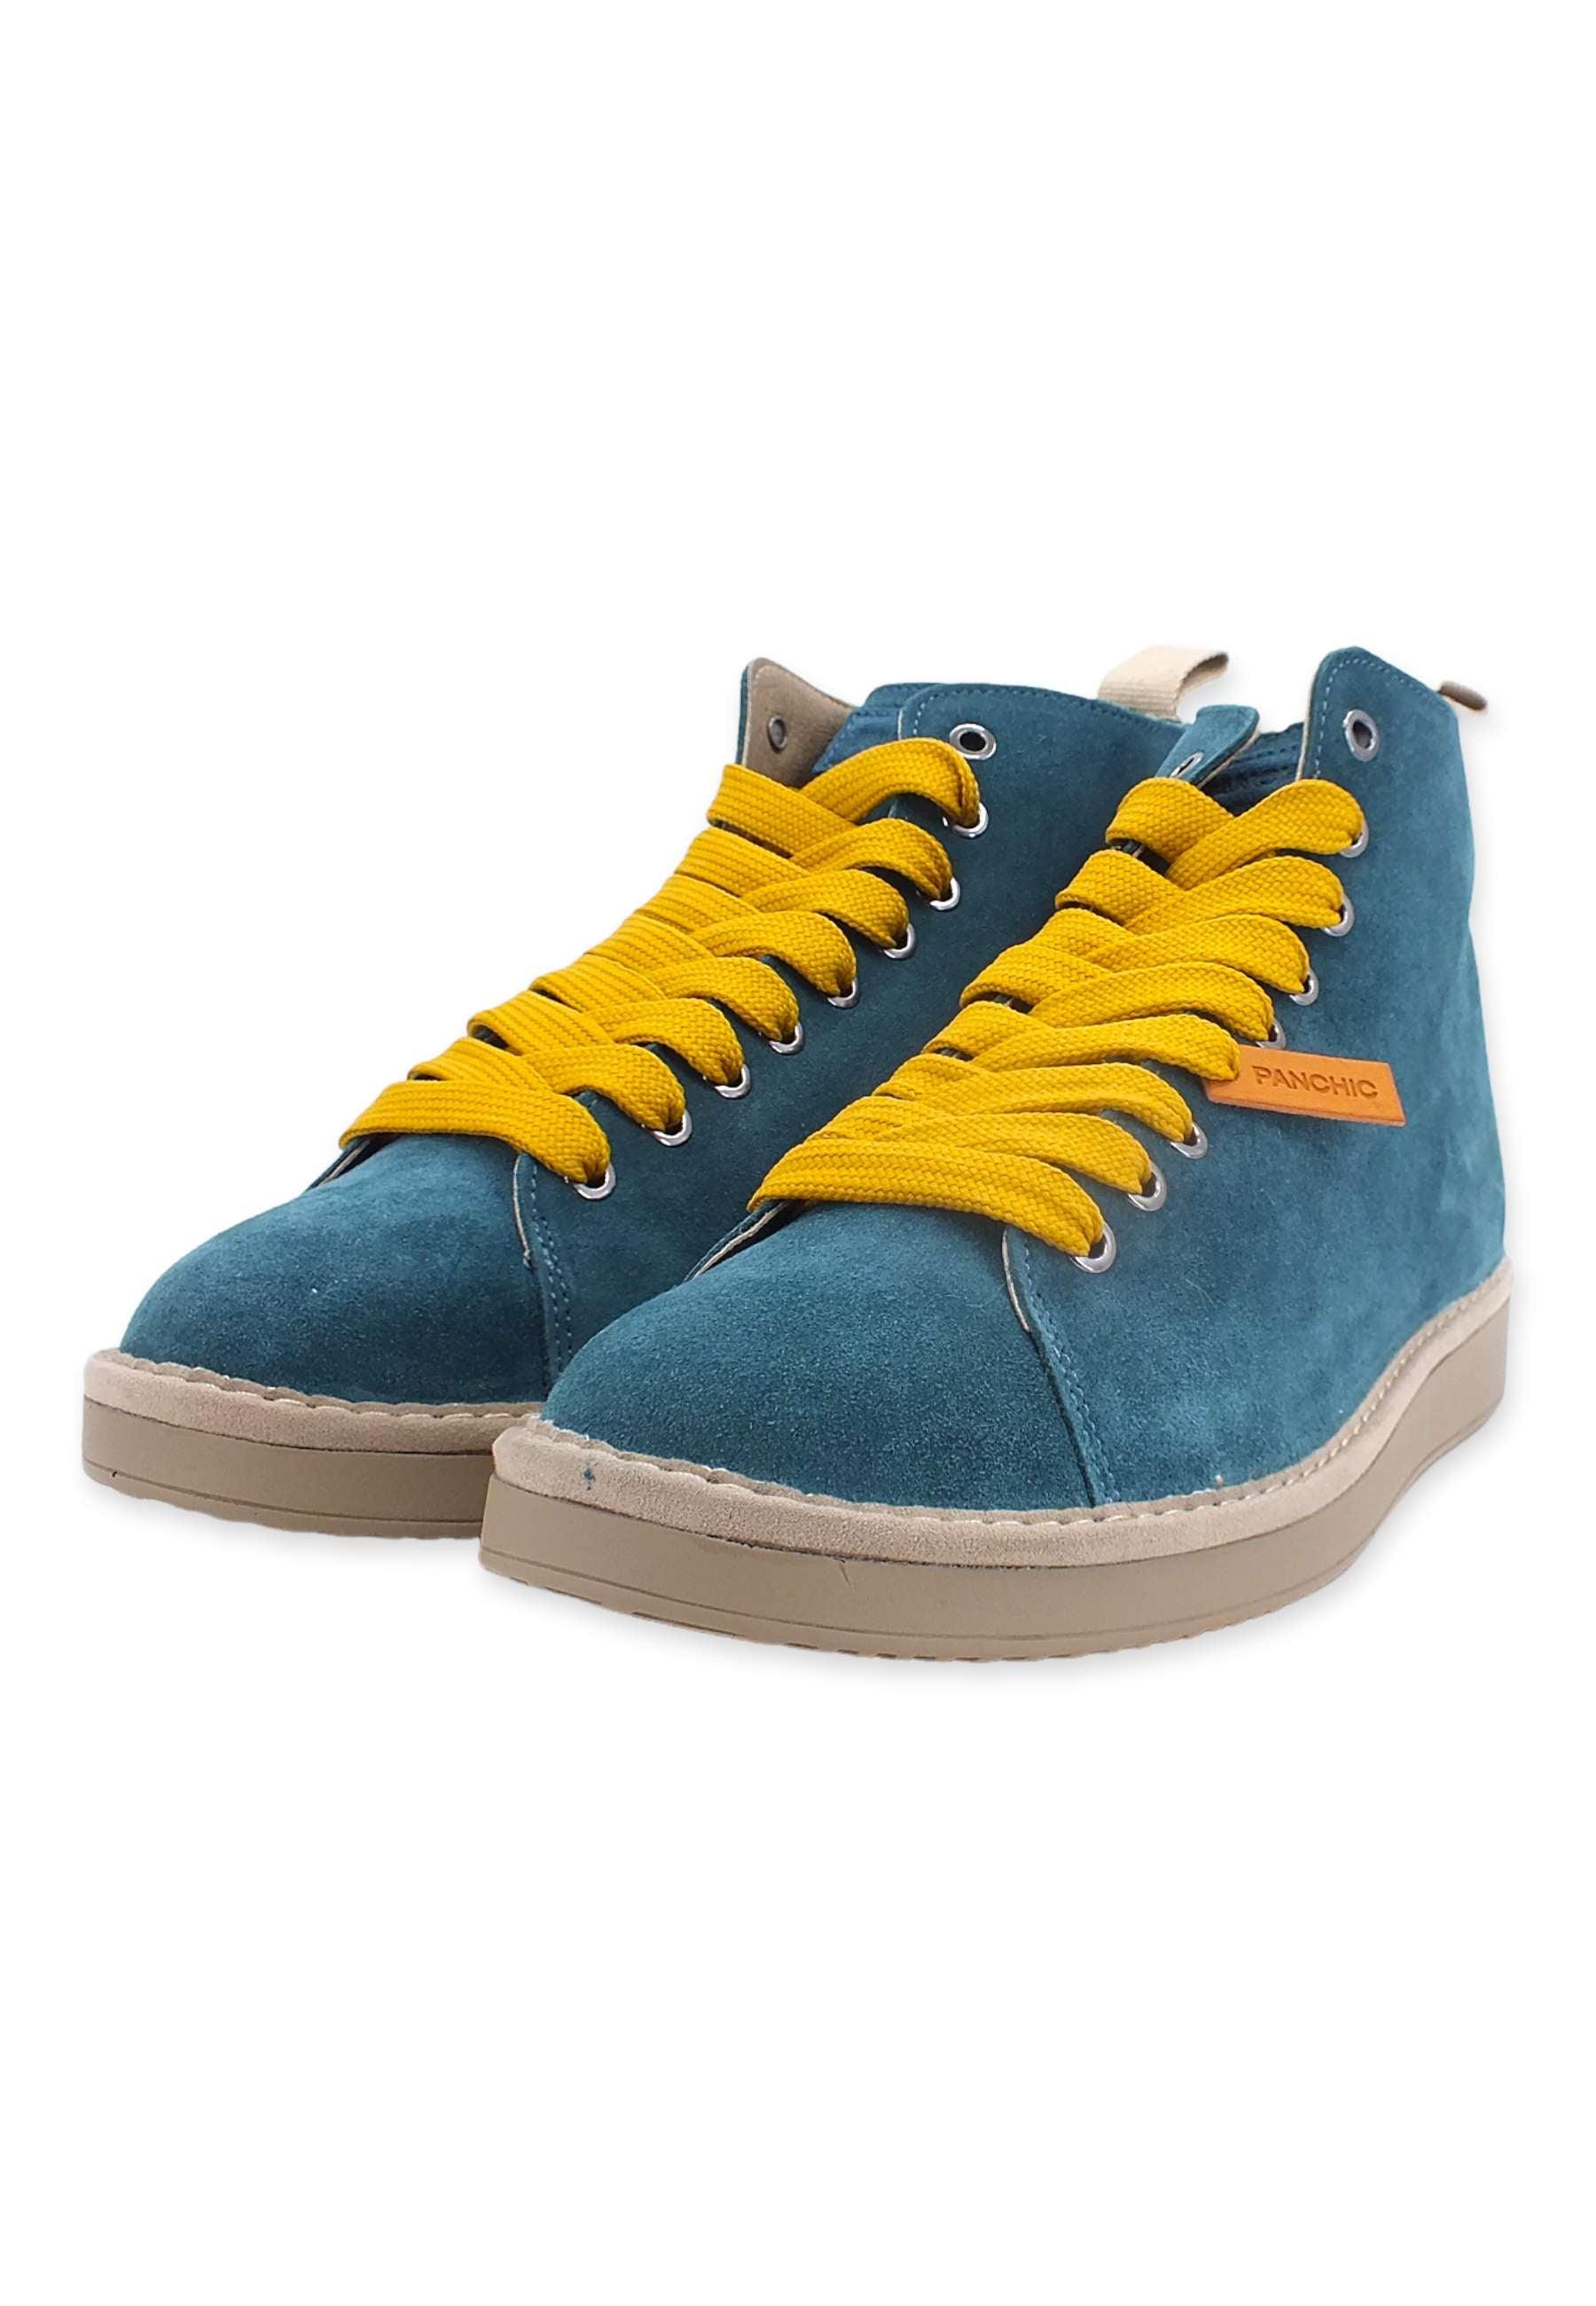 PAN CHIC Ankle Boot Sneaker Uomo Blu Petrol Yellow P01M1400200005 - Sandrini Calzature e Abbigliamento